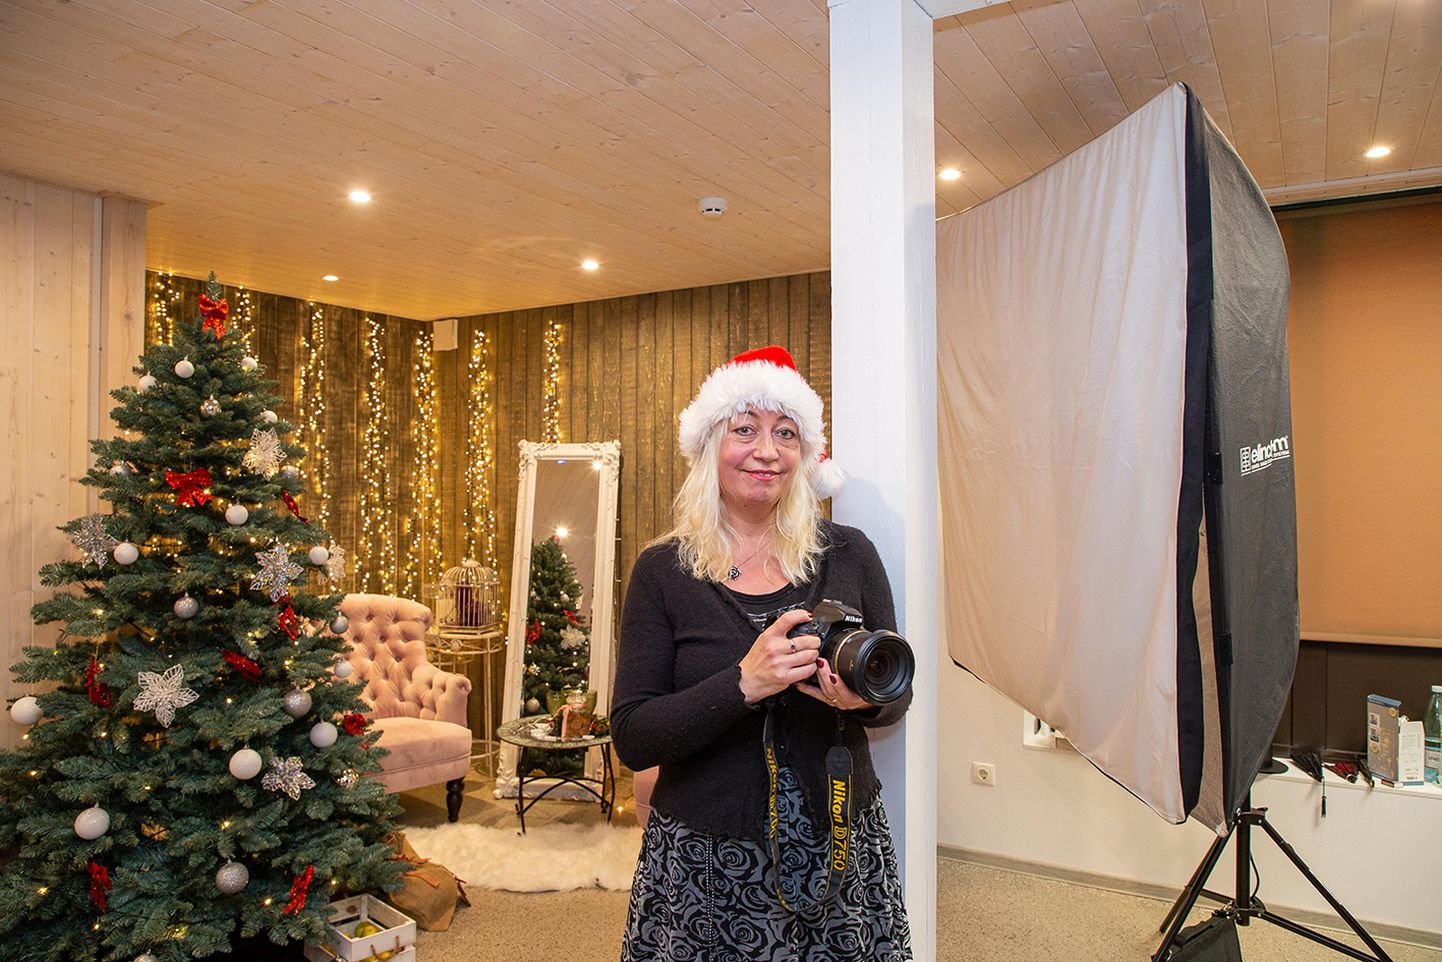 Jõulud juba oktoobris: esimese jõuluteemalise fotosessiooni tegi vastselt tegevust alustanud Elise fotostuudios selle omanik Reelika Marrandi juba oktoobris.